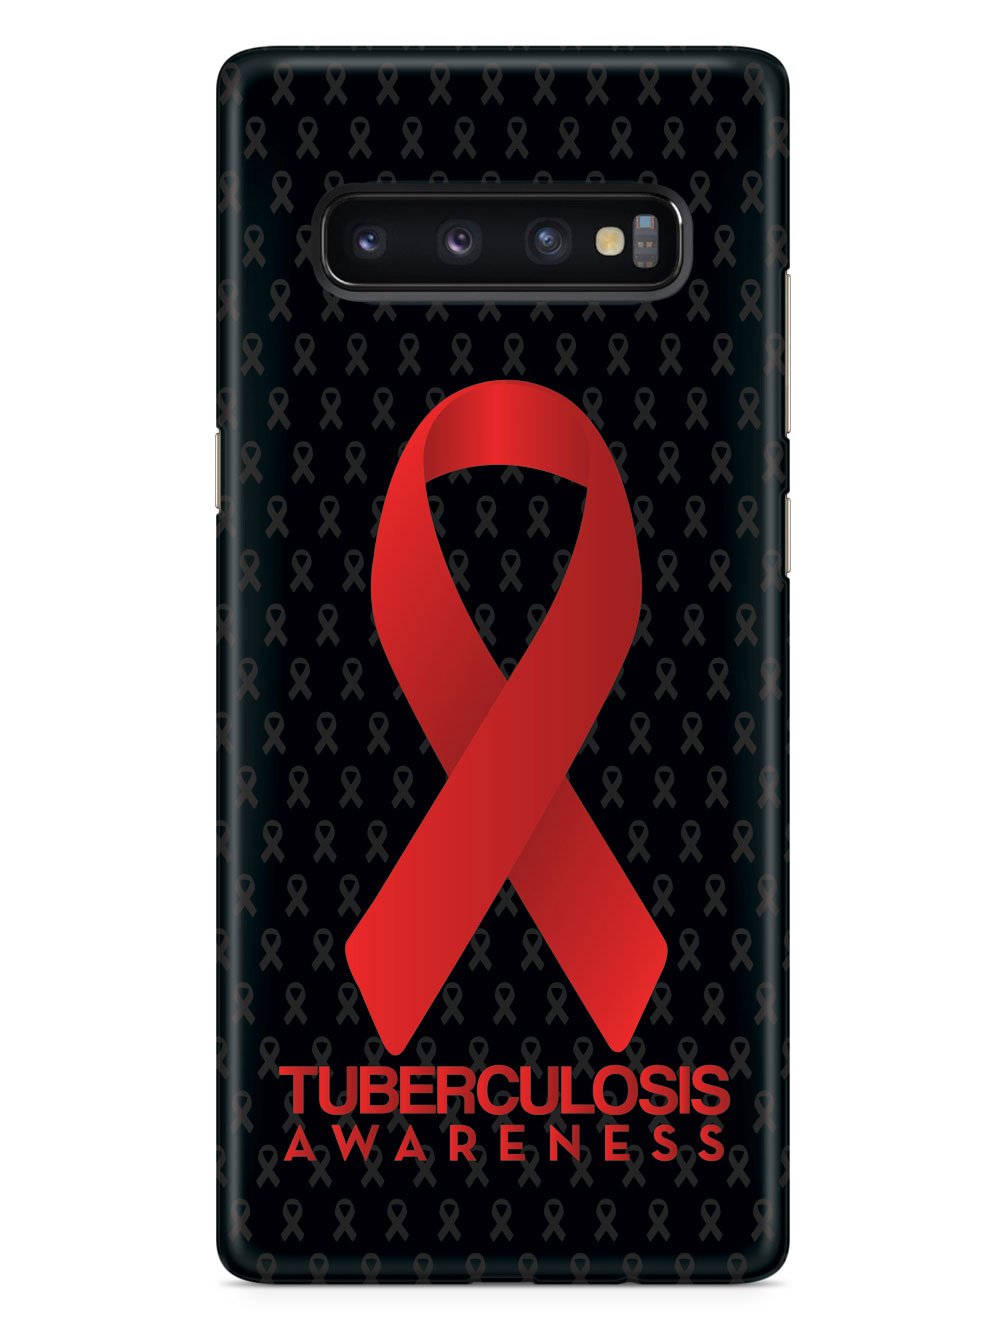 Tuberculosis - Awareness Ribbon - Black Case